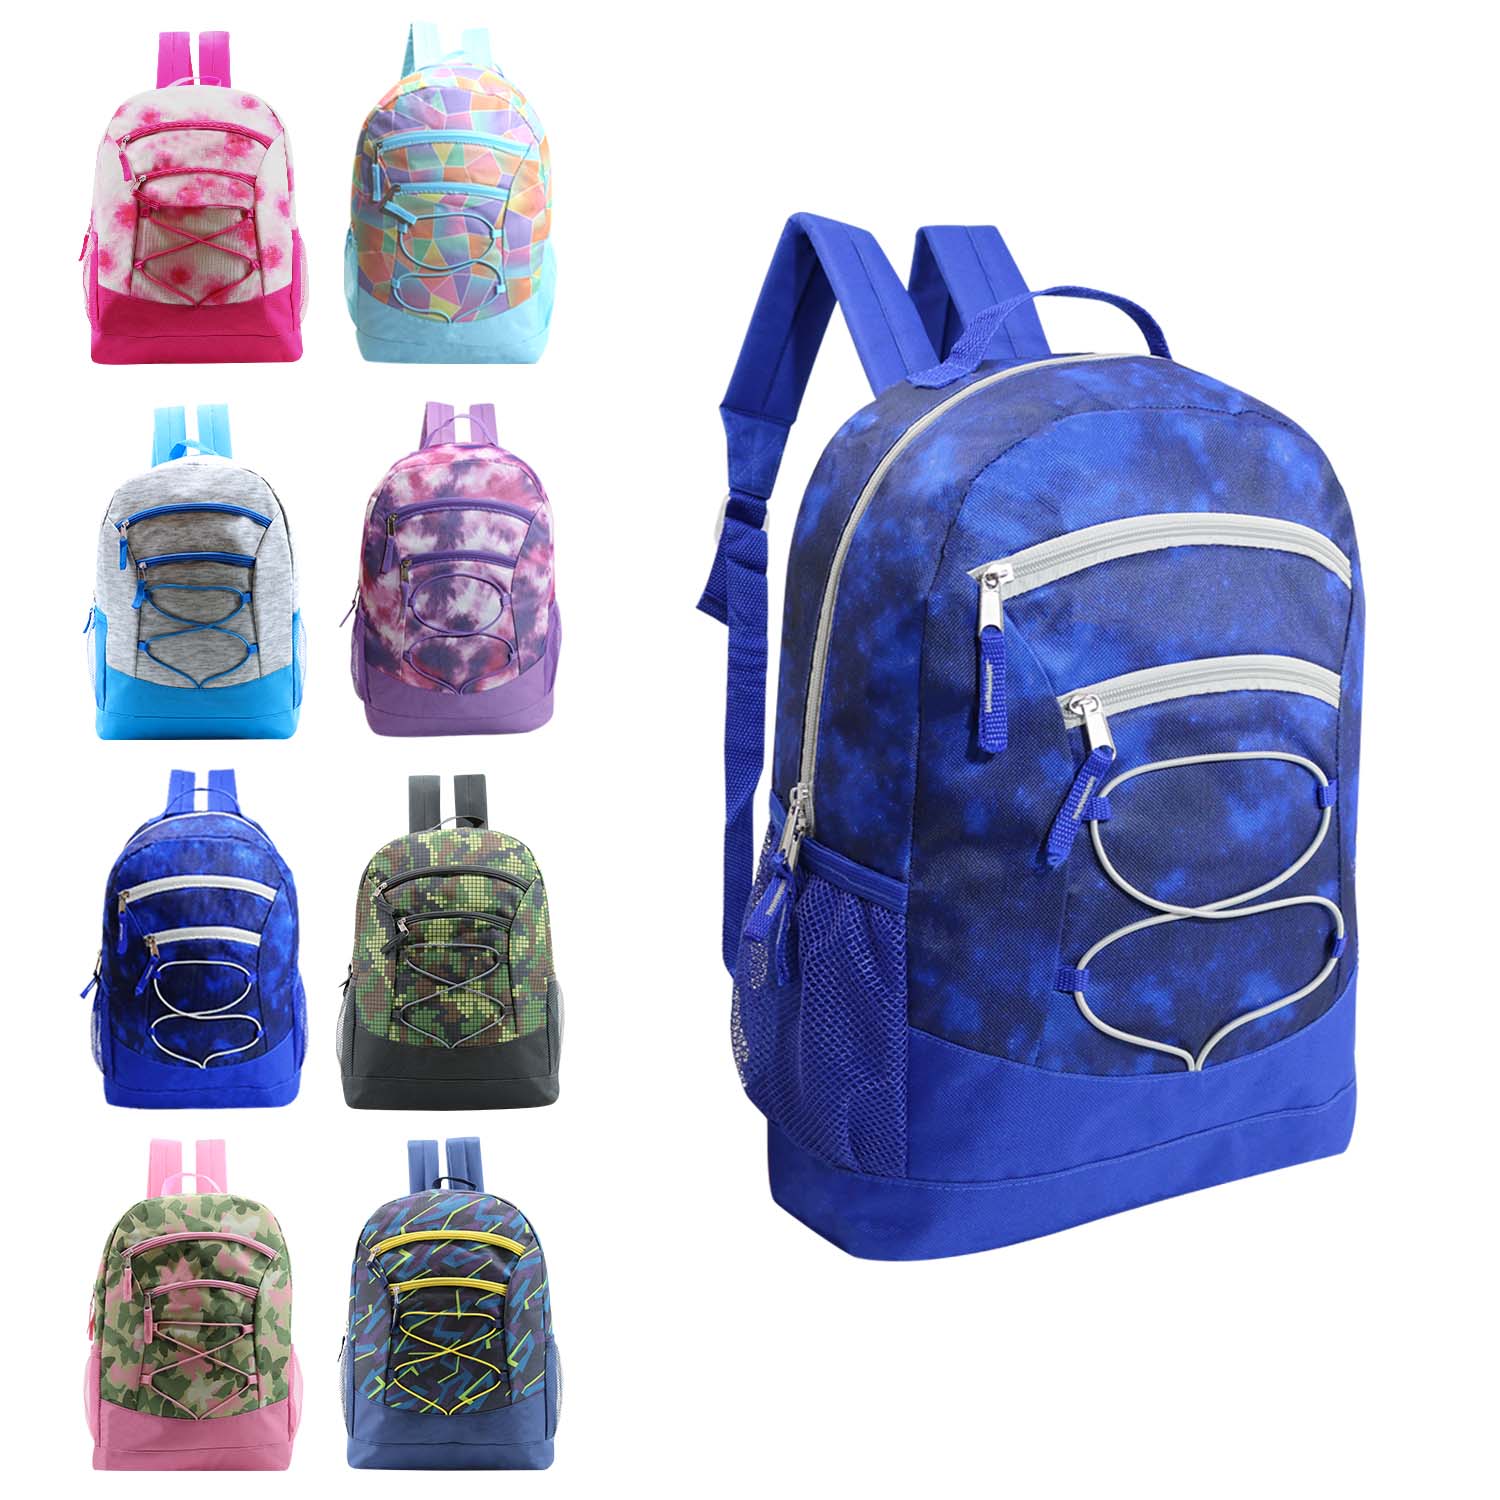 17" Bungee Wholesale Backpack In 8 Prints -  Bulk Case Of 24 Backpacks